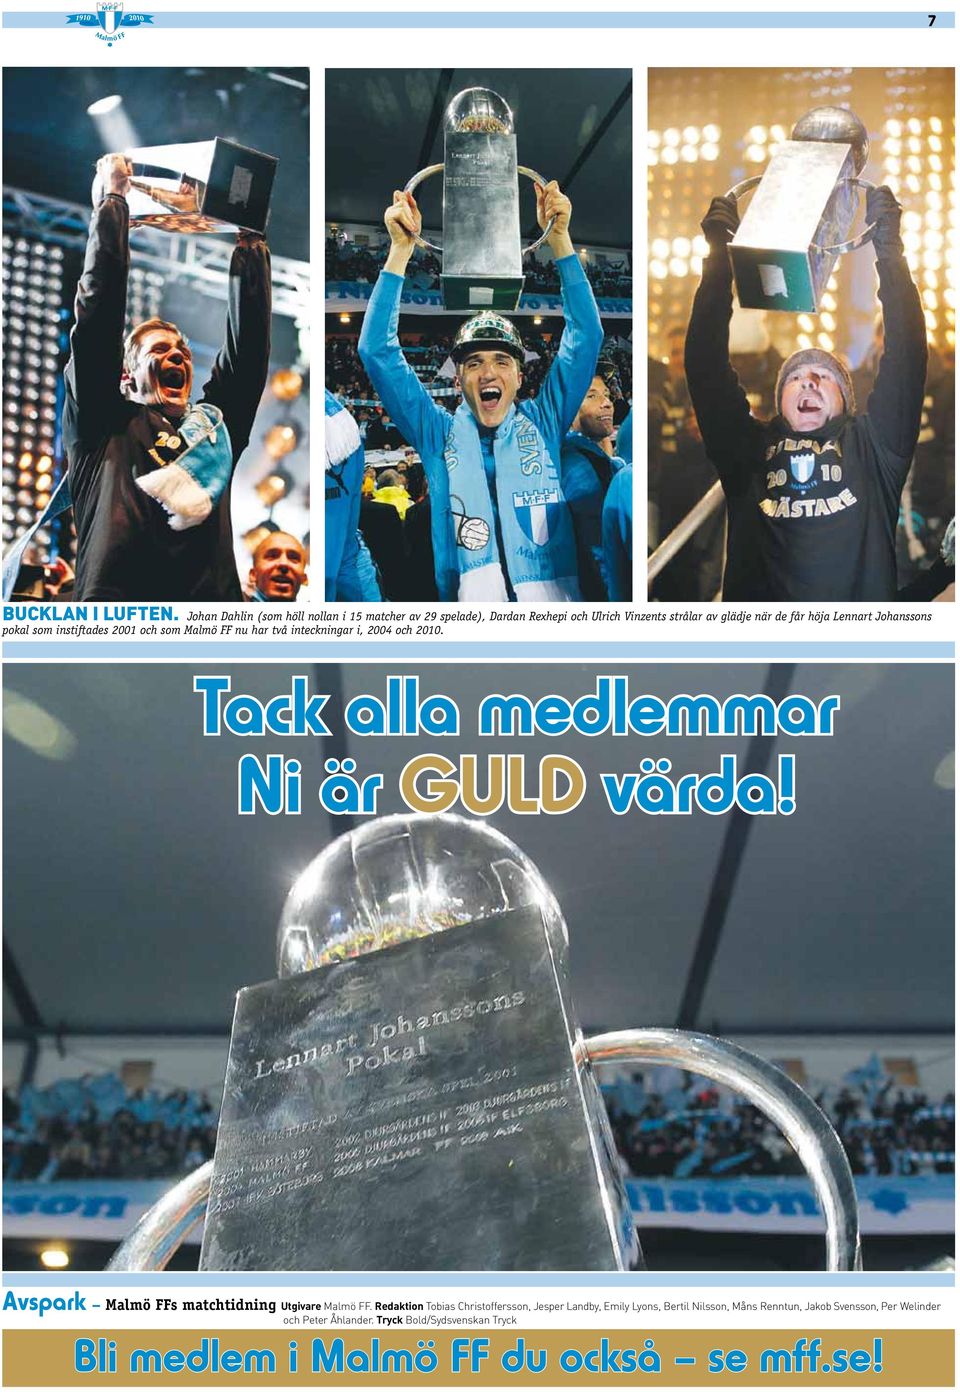 Johanssons pokal som instiftades 2001 och som Malmö FF nu har två inteckningar i, 2004 och 2010. Tack alla medlemmar Ni är GULD värda!